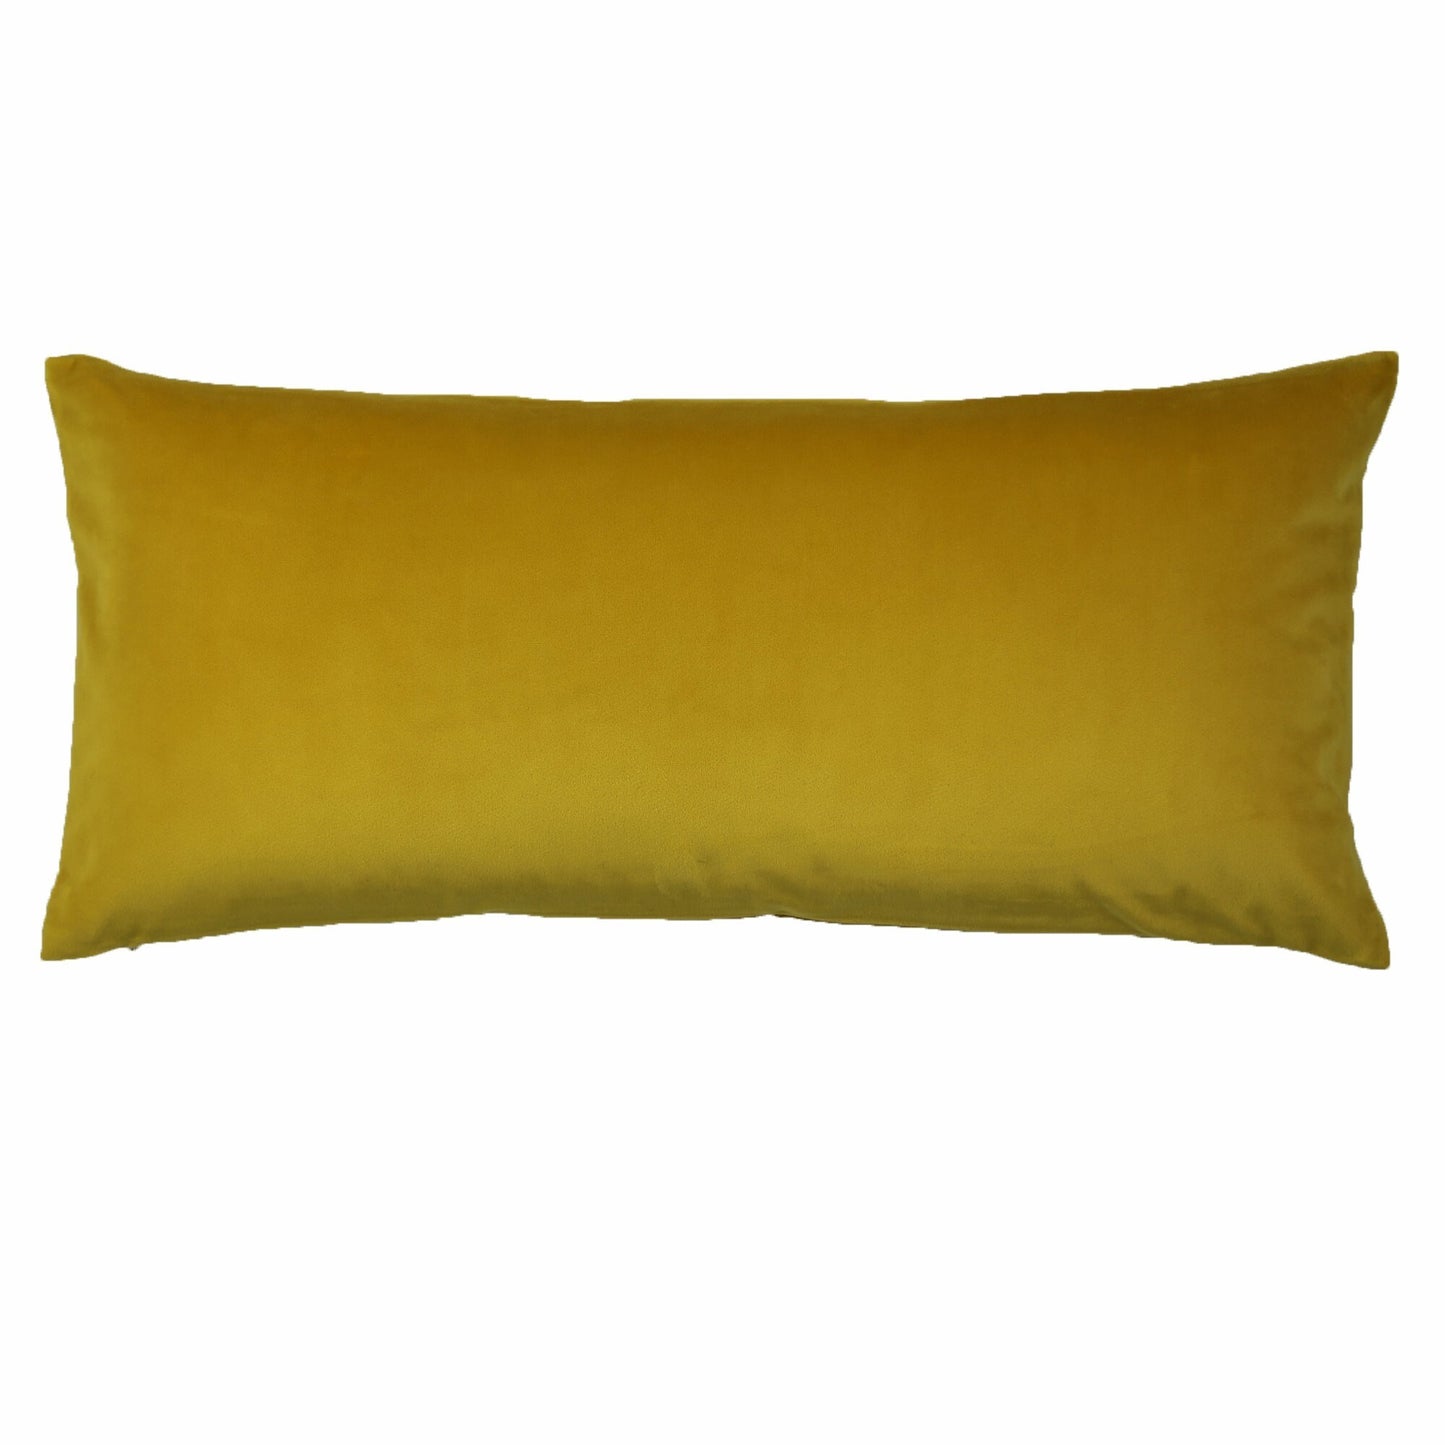 Velvet + Duchess Reversible Pillow